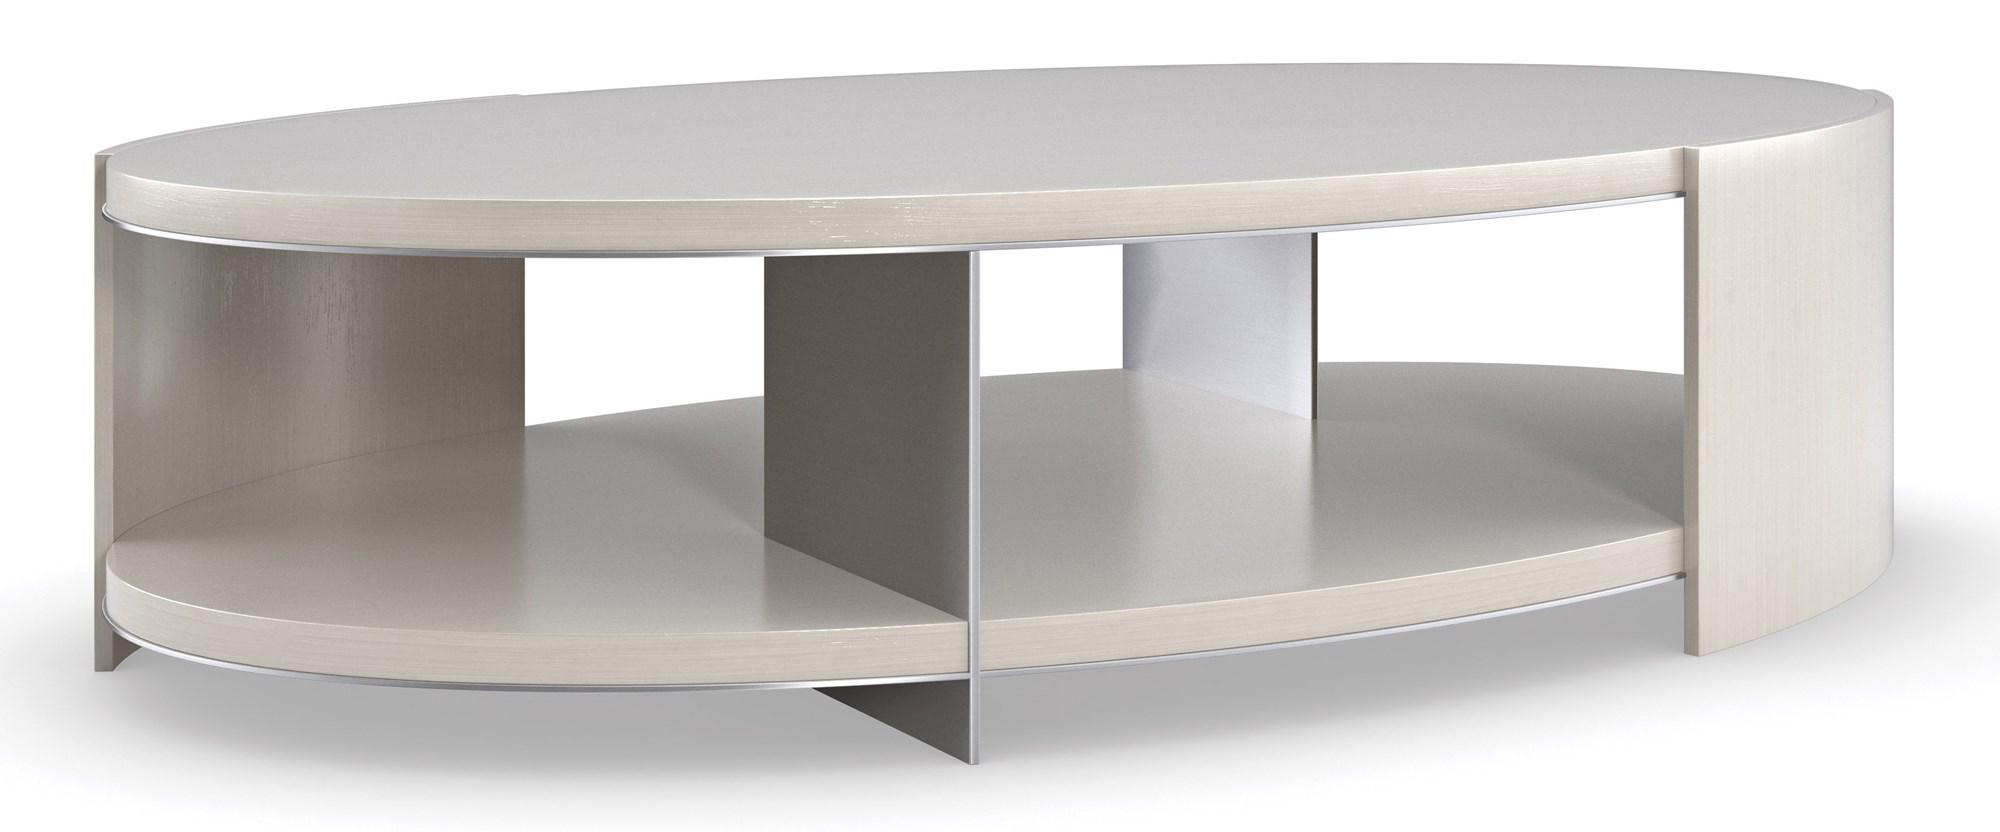 Contemporary Coffee Table DA VITA COCKTAIL TABLE M131-421-402 in Silver, Gray 